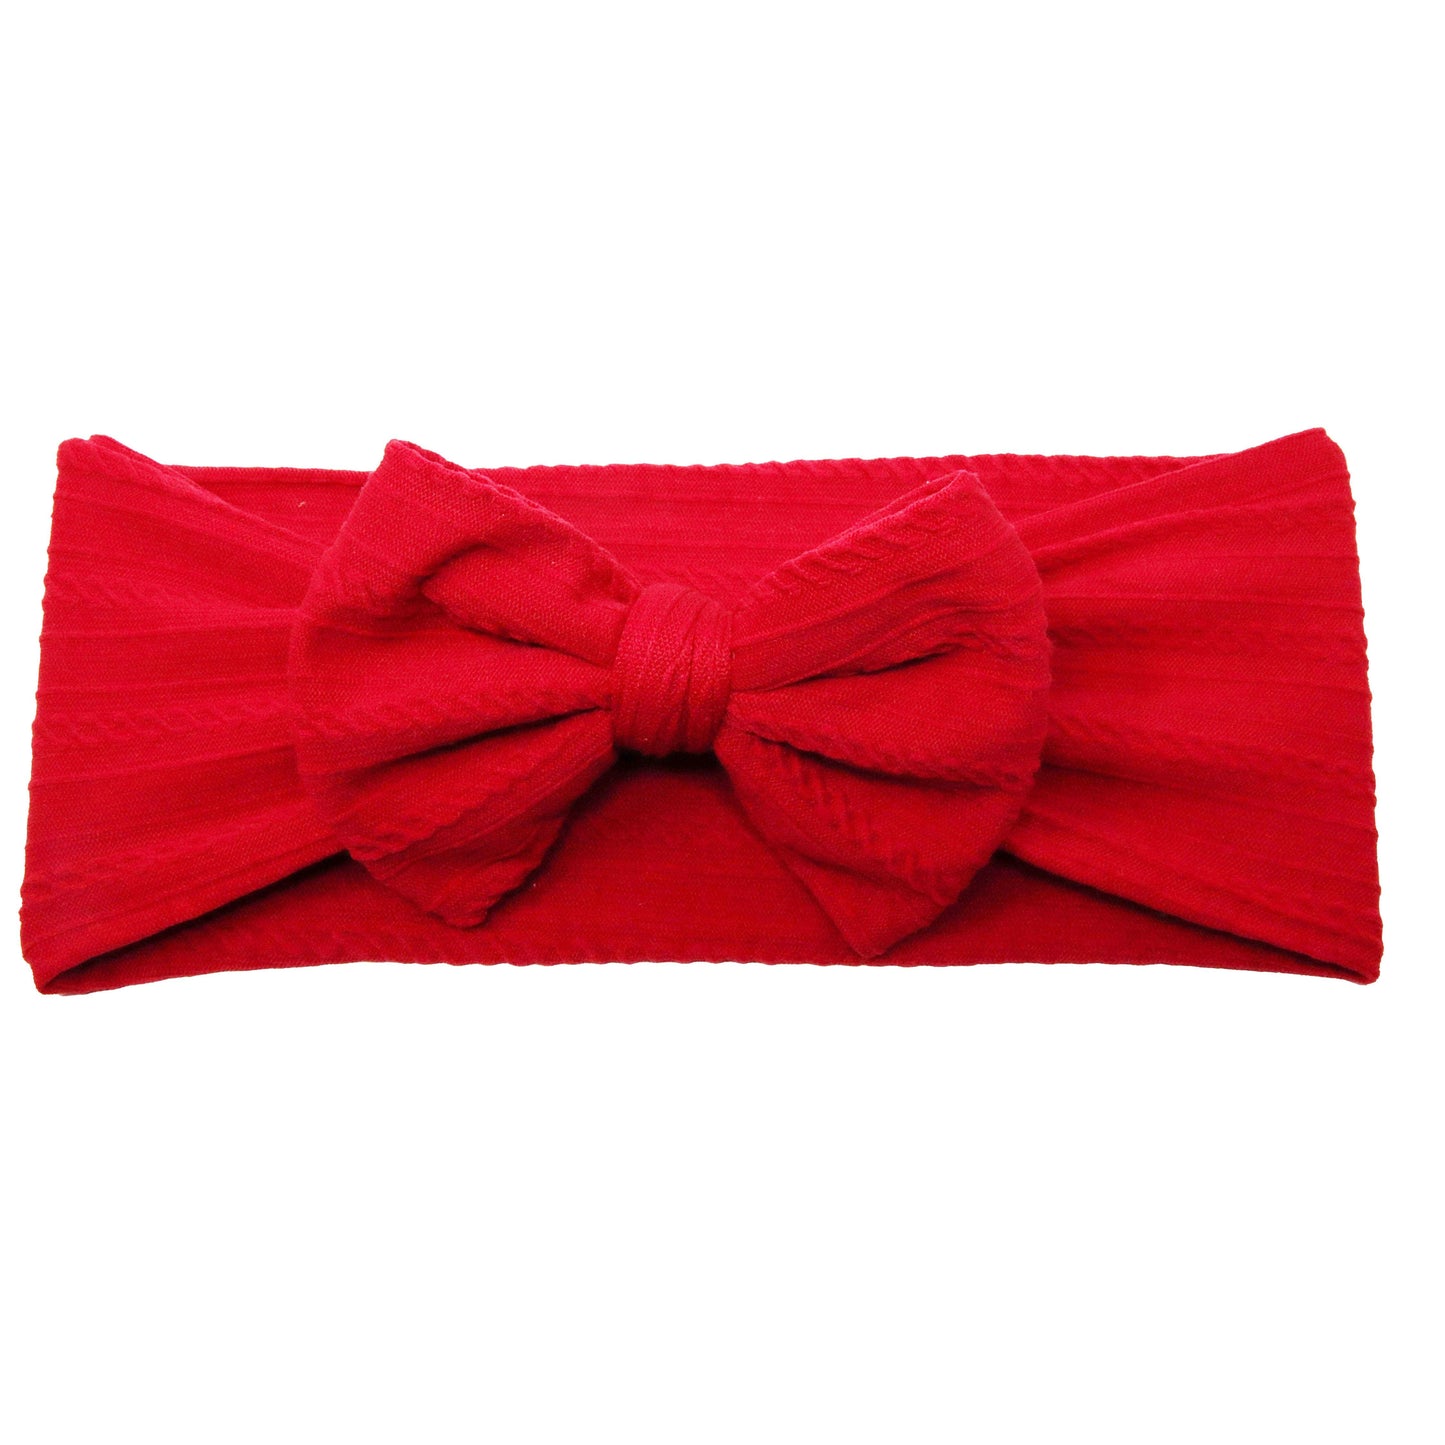 Cranberry Braid Knit Bow Headwrap 4"